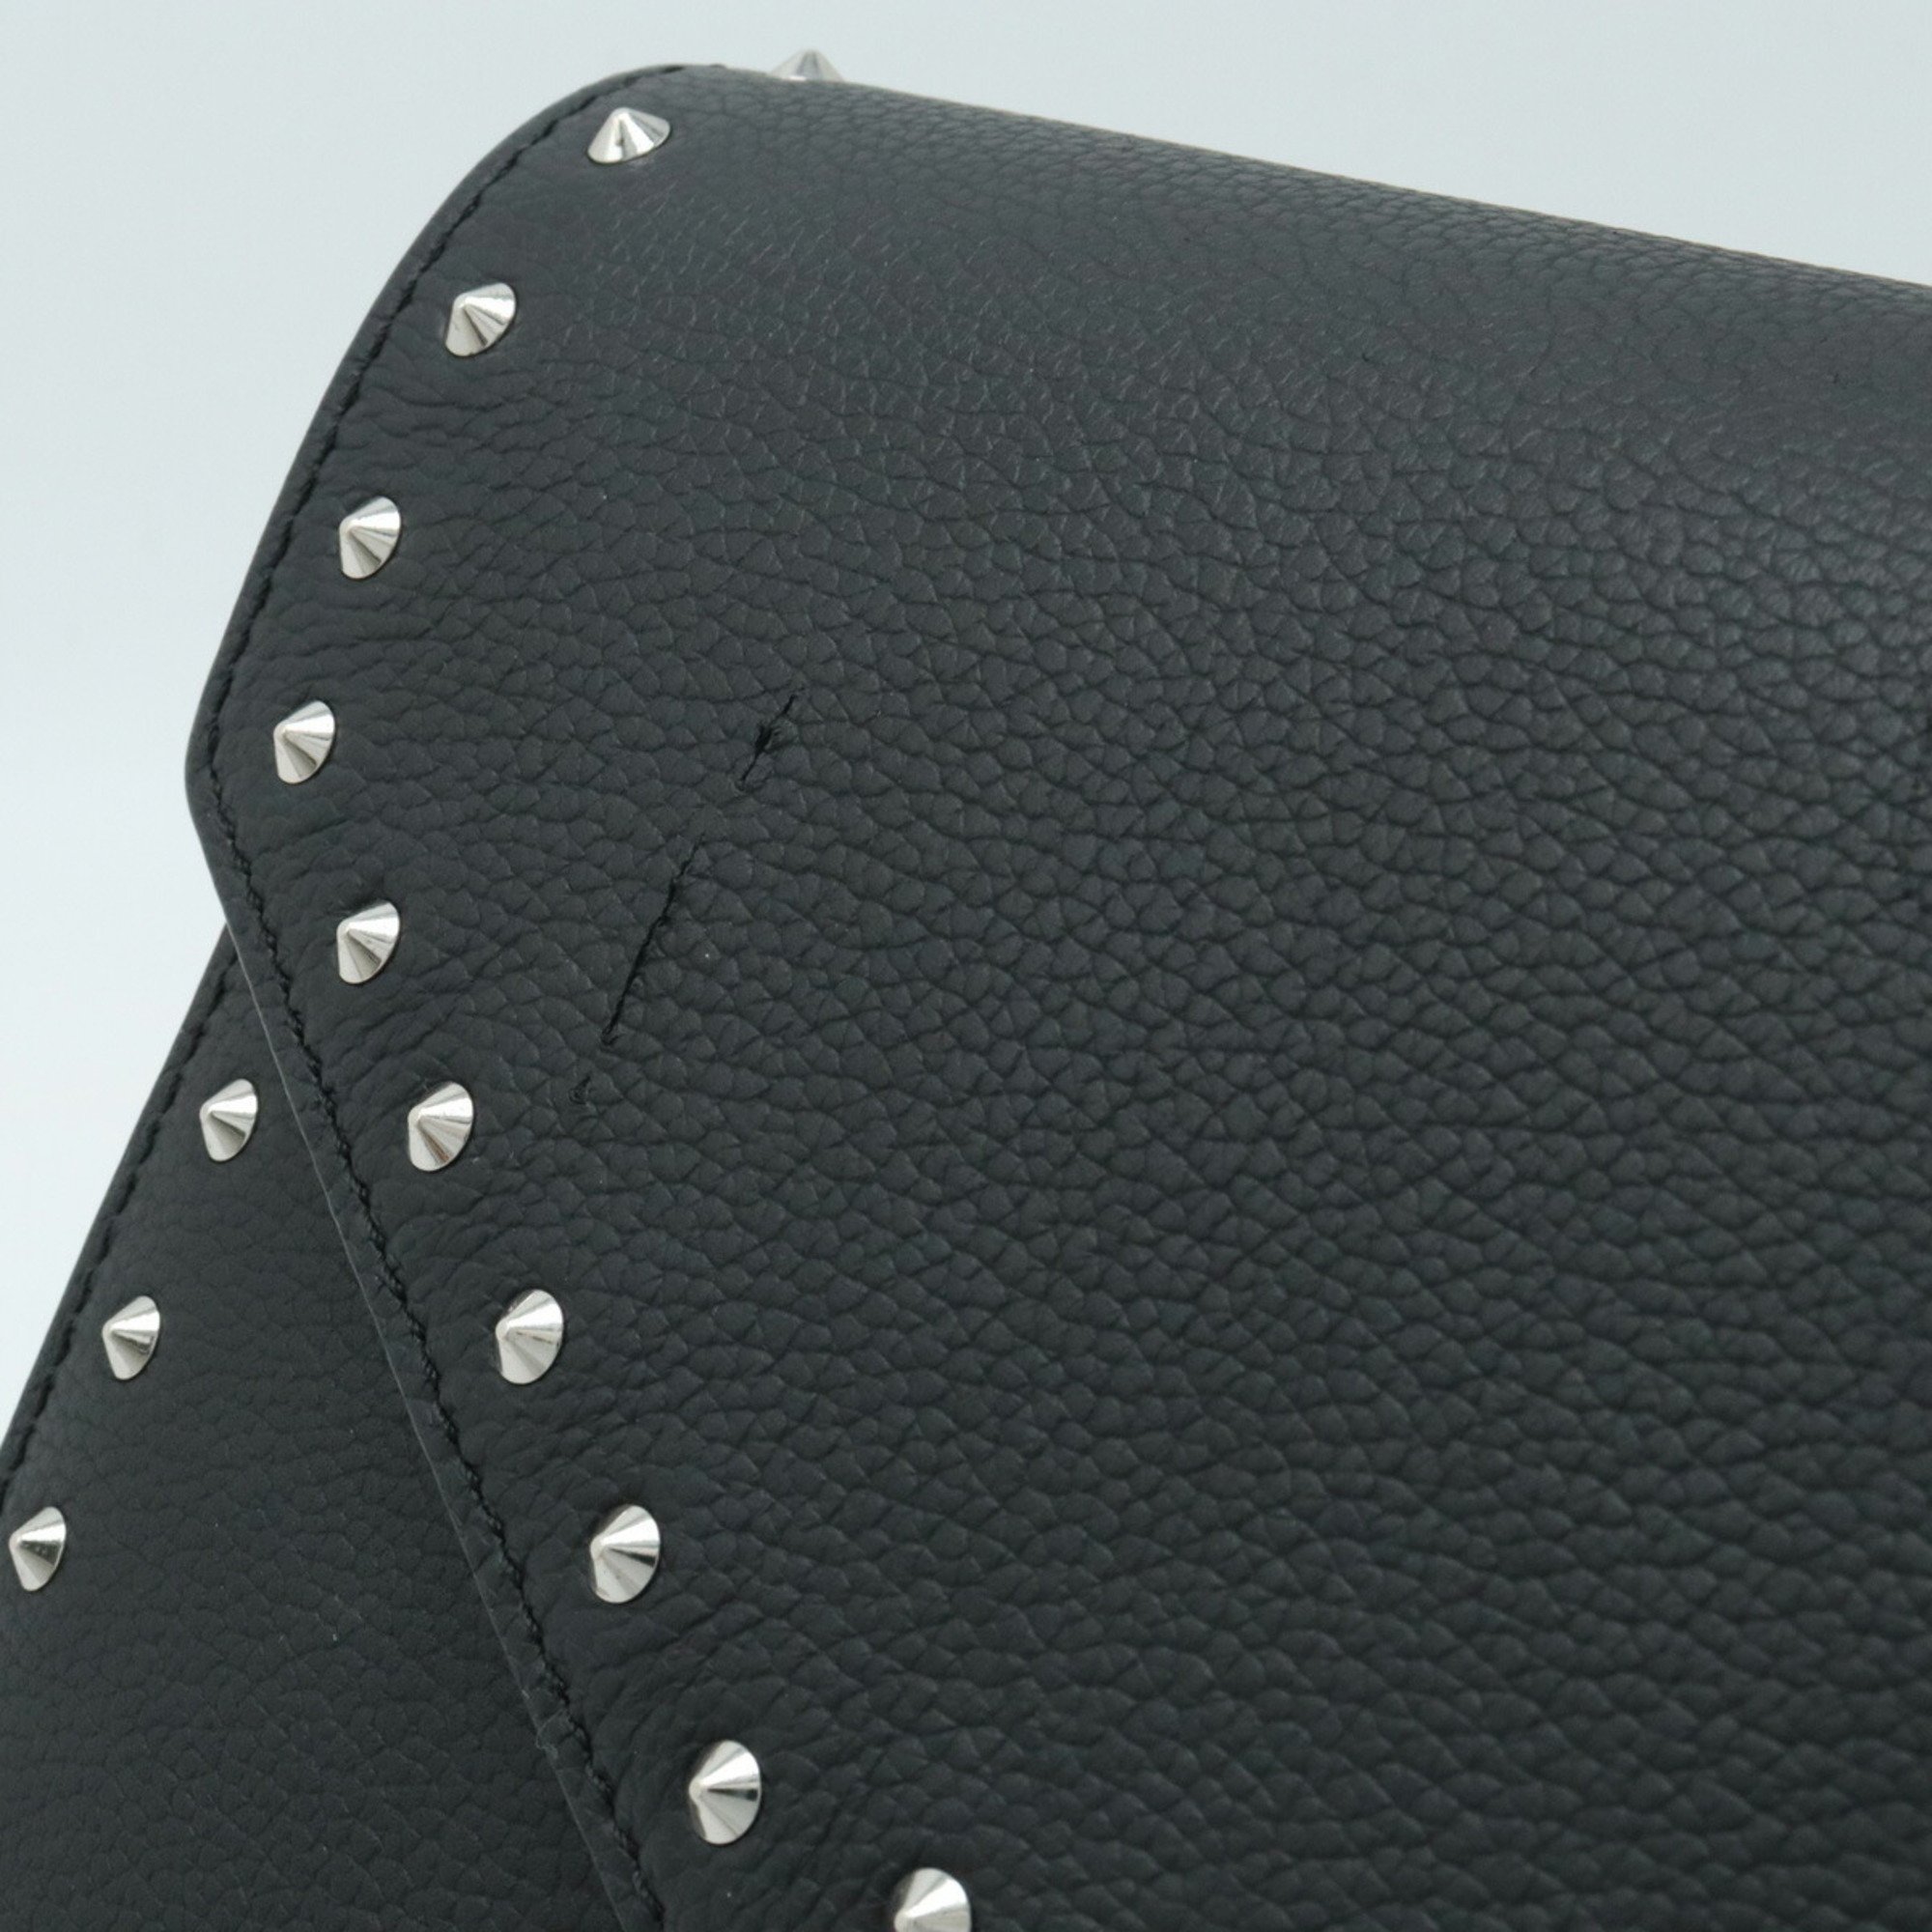 MCM Shoulder Bag Pochette Studded Leather Black